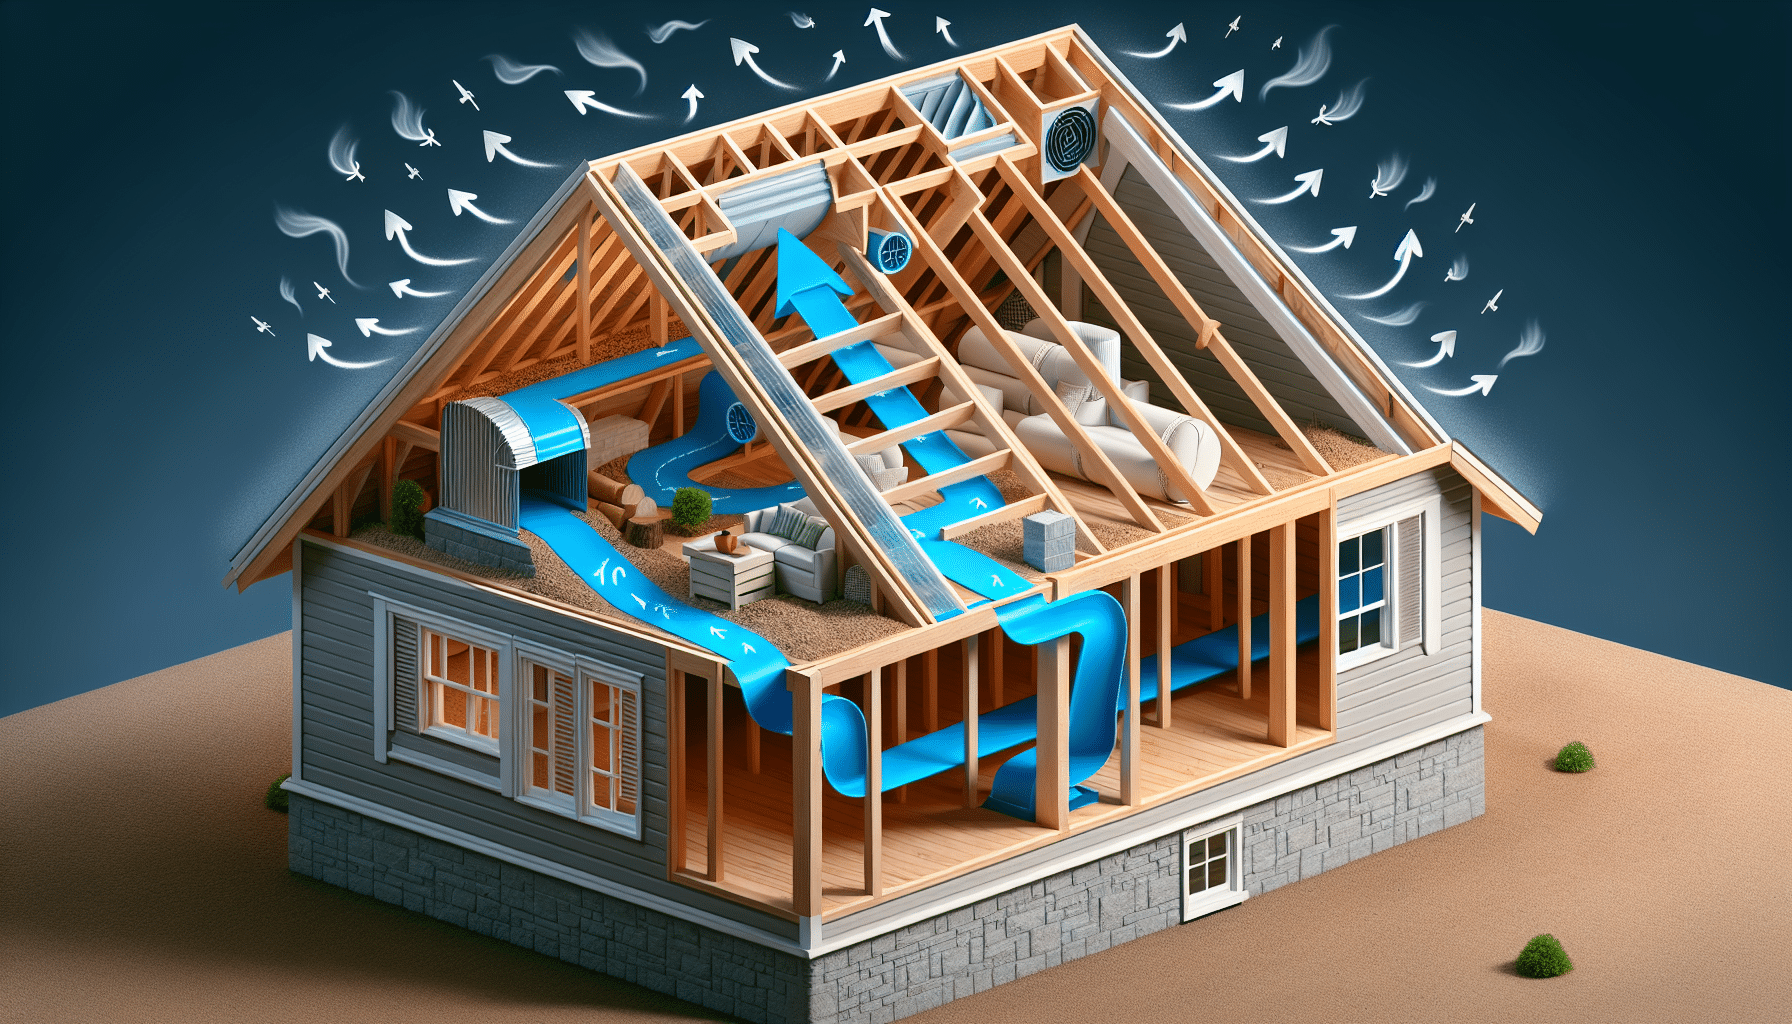 Proper roof ventilation system